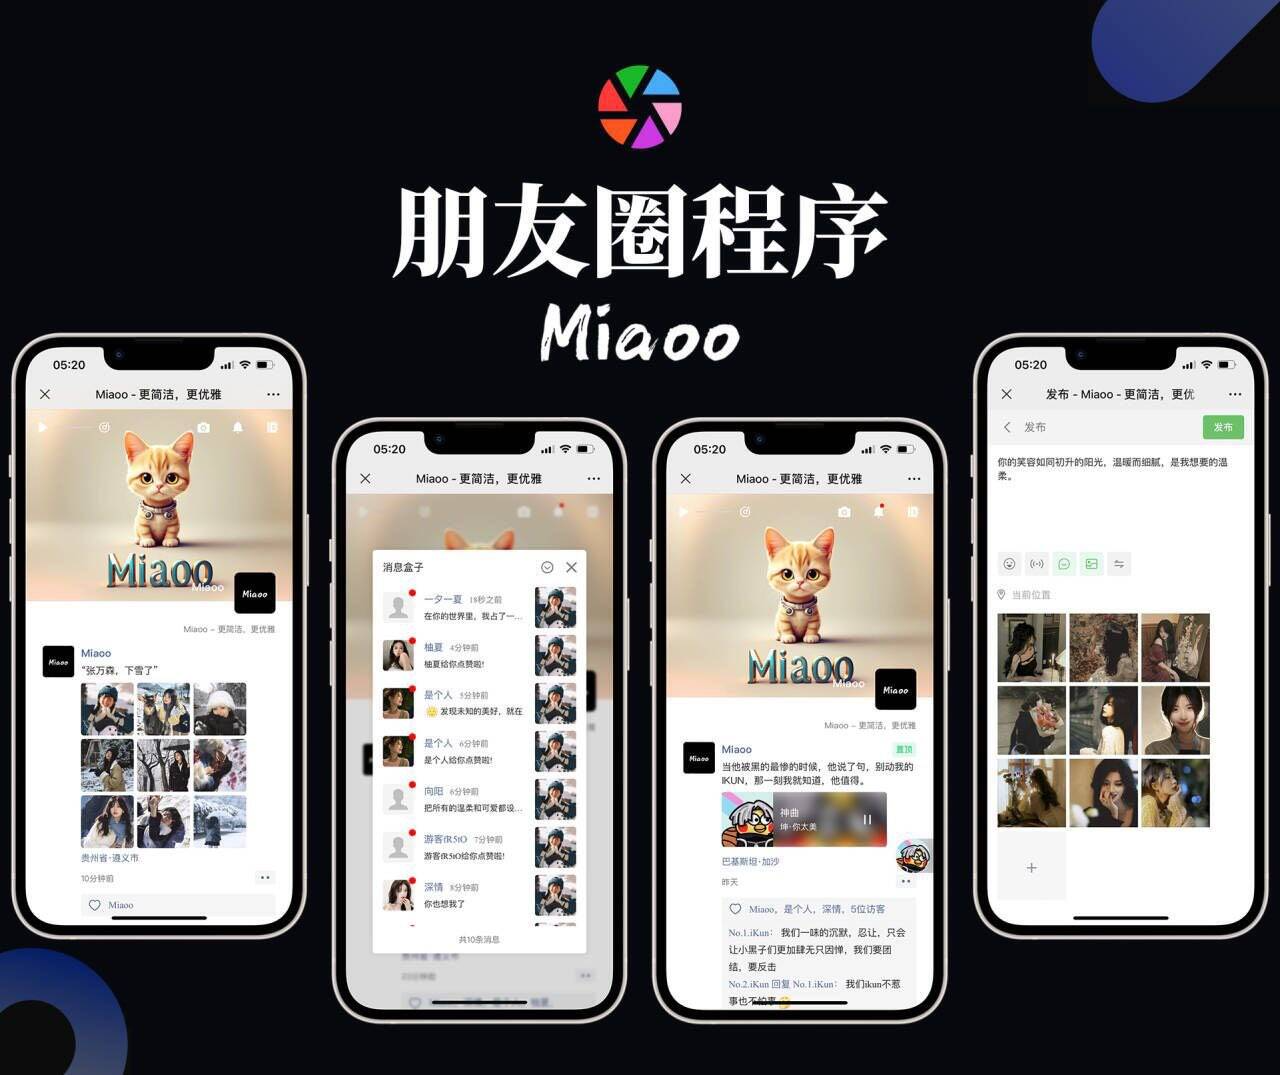 Miaoo朋友圈程序全开源版源码插图源码资源库